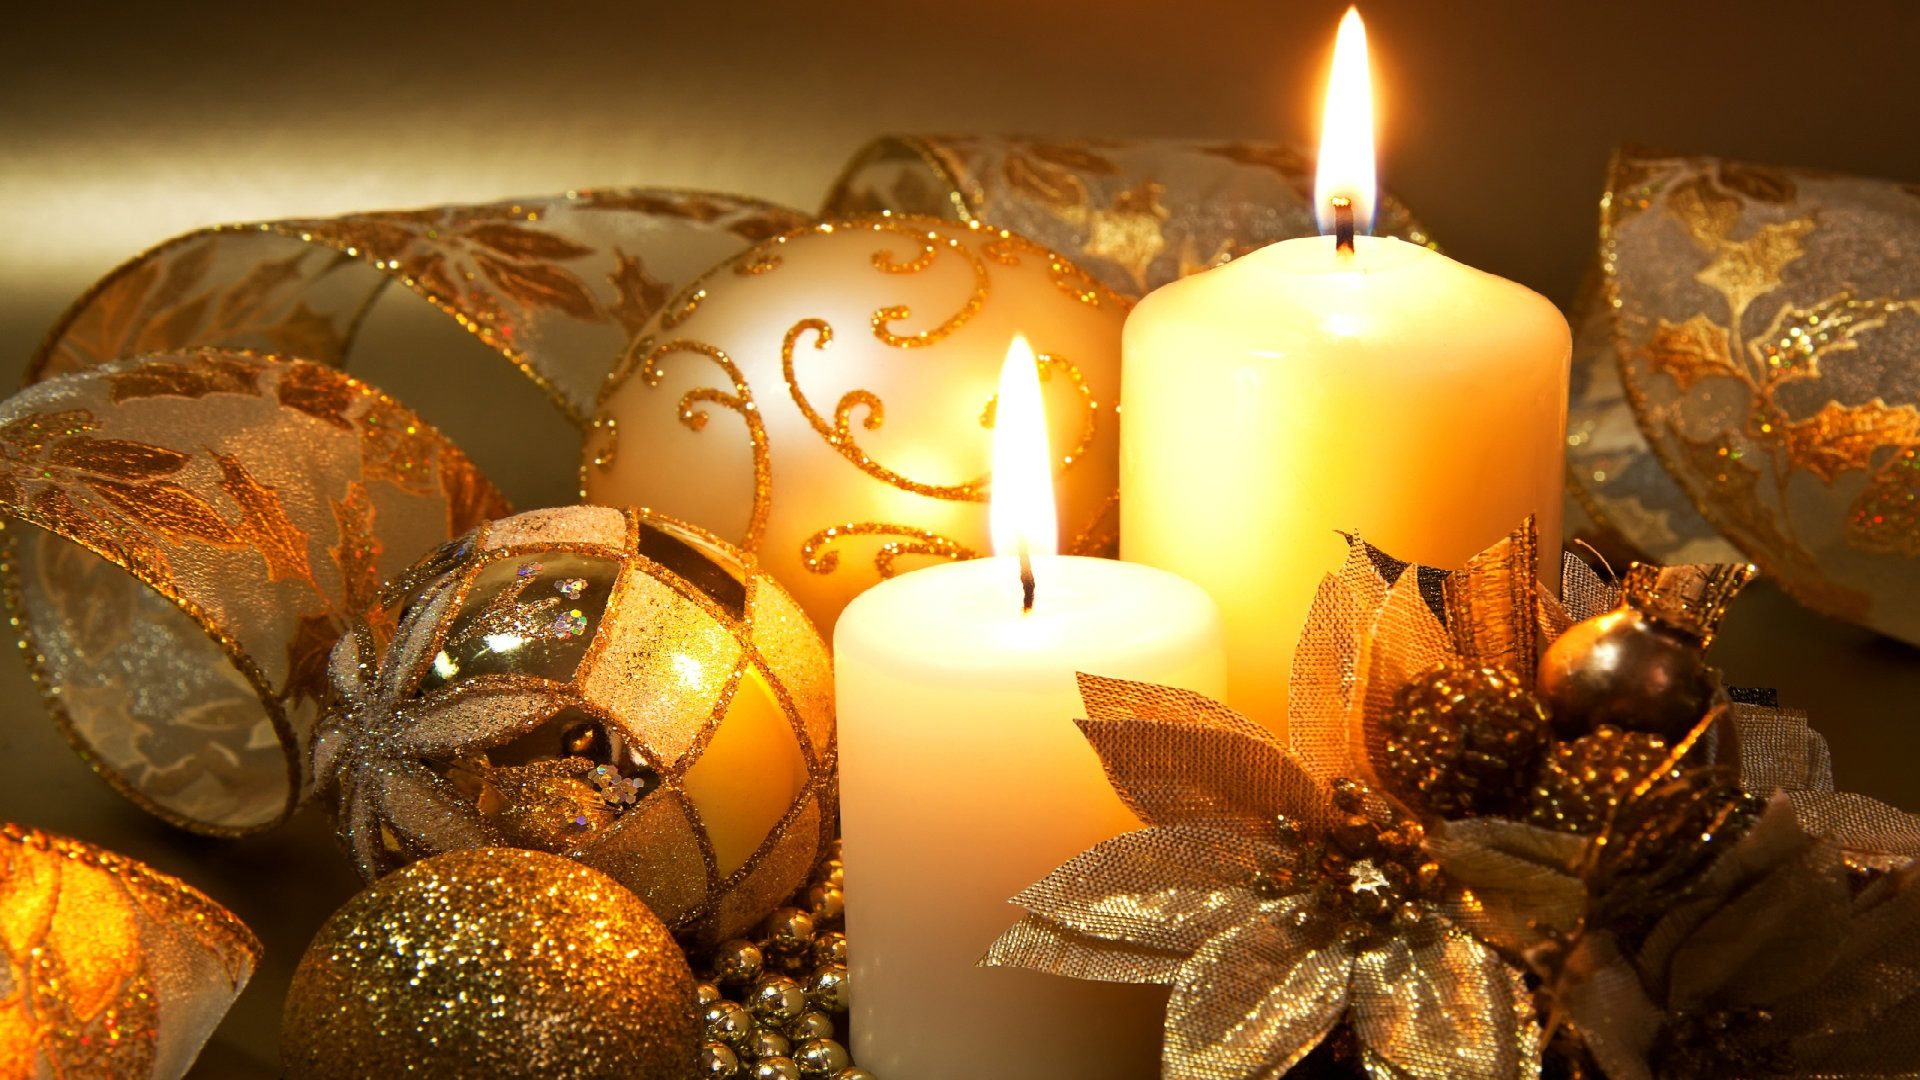 navidad fondos de pantalla hd 1920x1080,vela,encendiendo,naturaleza muerta,decoración navideña,nochebuena